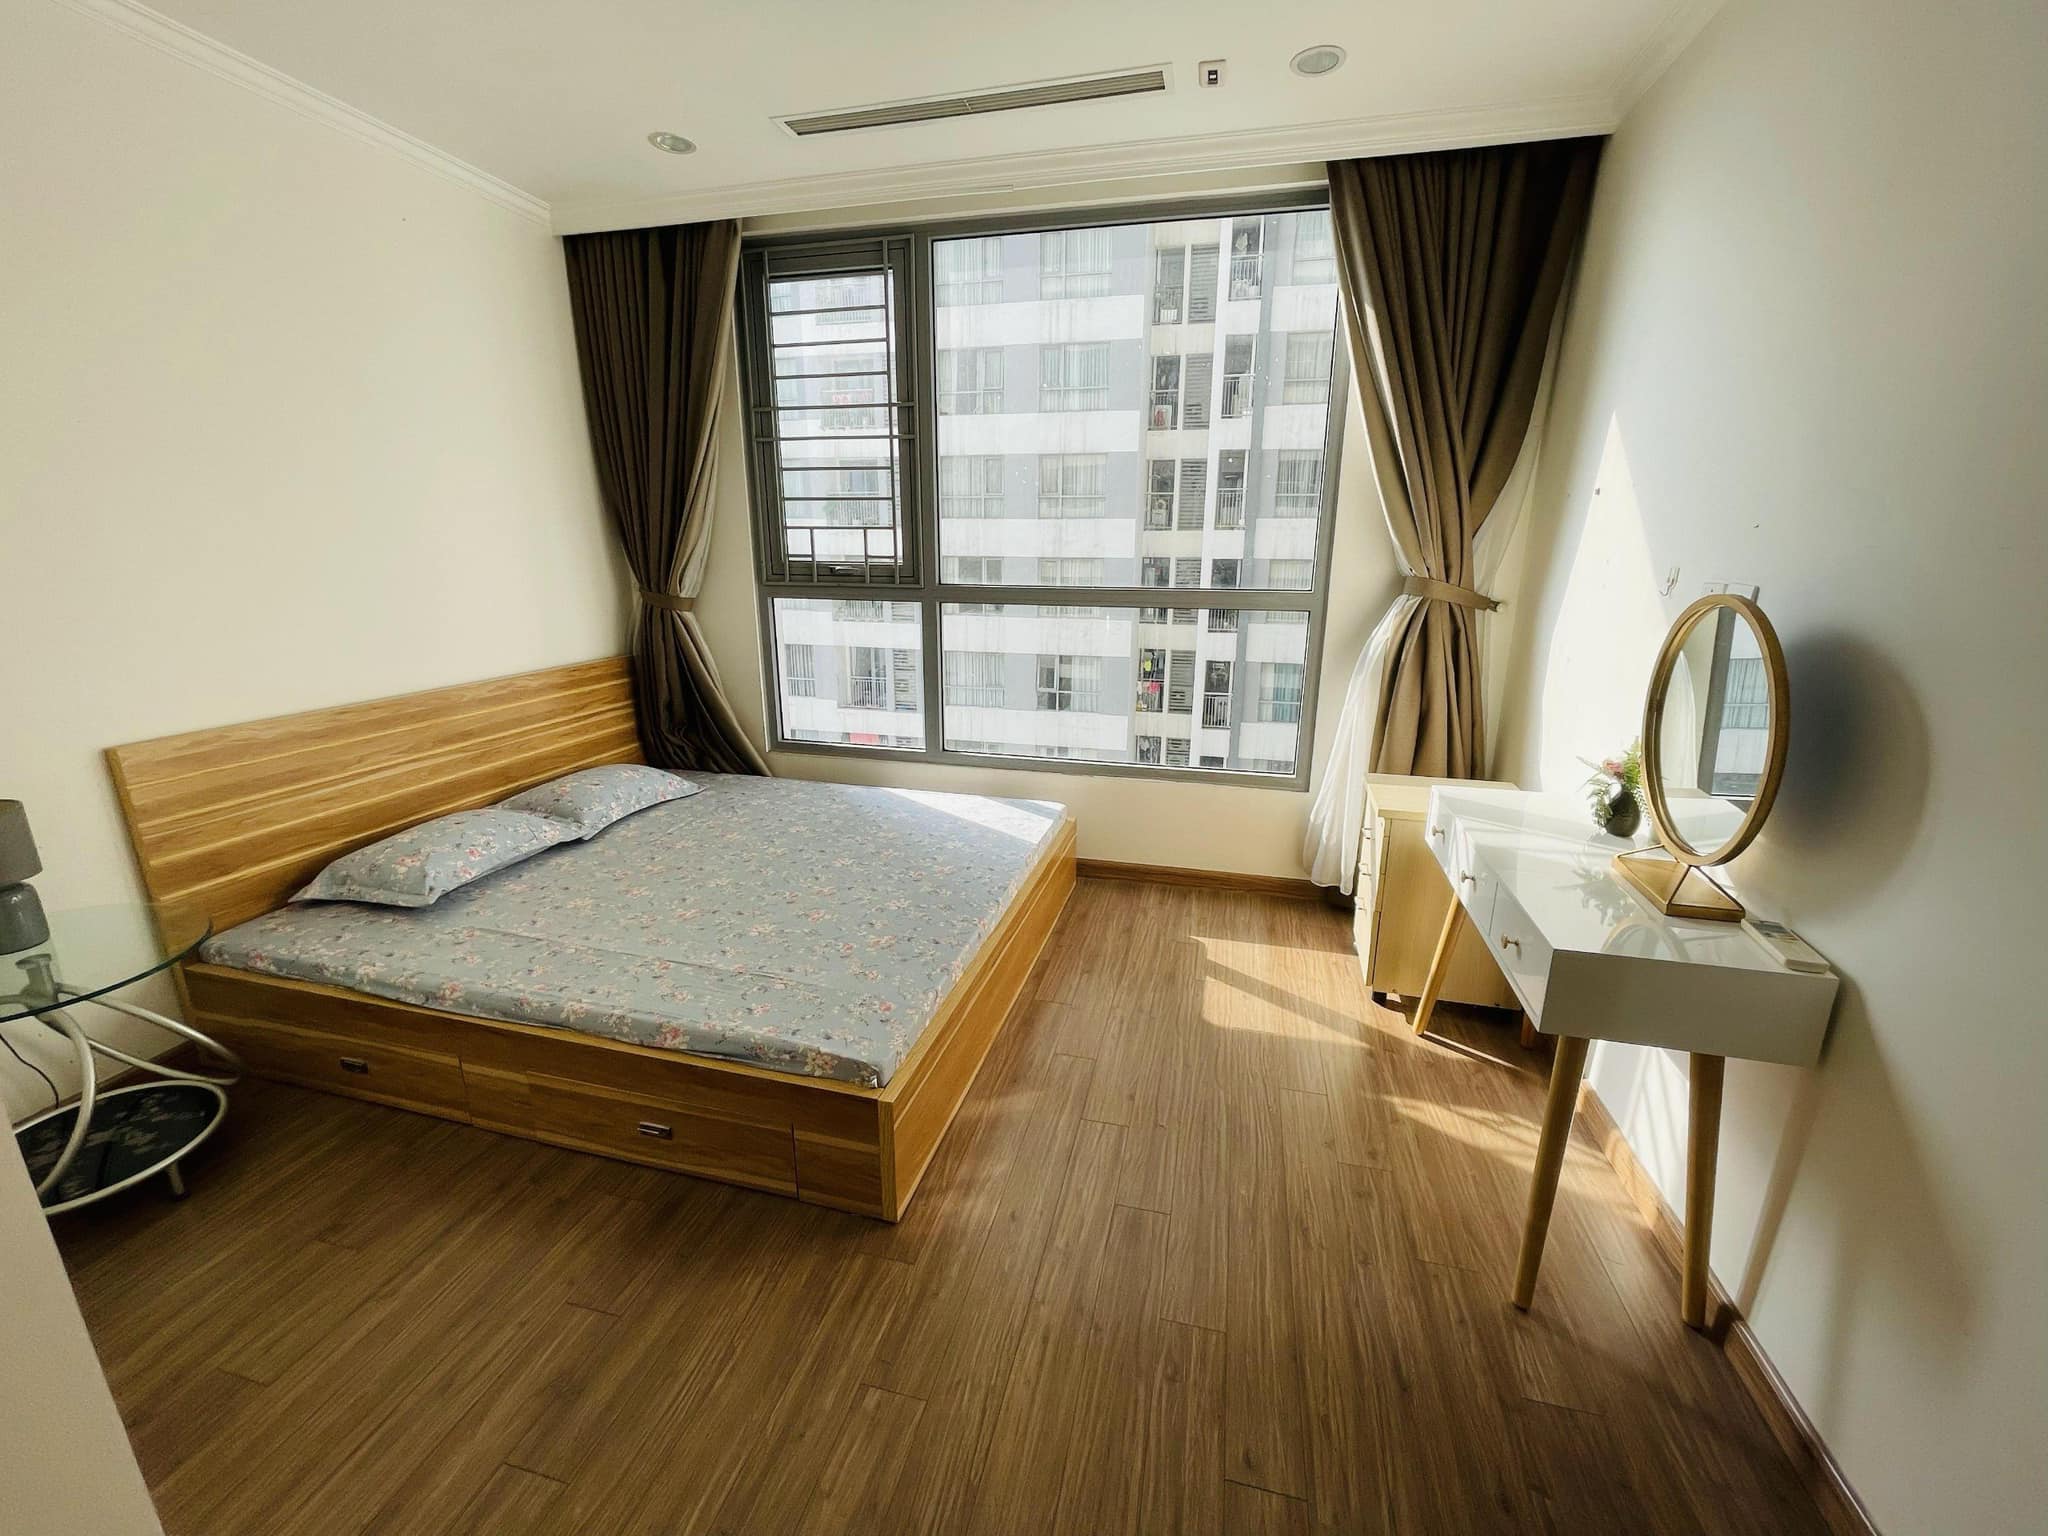 Cho thuê căn hộ 2 phòng ngủ Park tầng trung khu đô thị Times City – 458 Minh Khai – giá 17,5tr